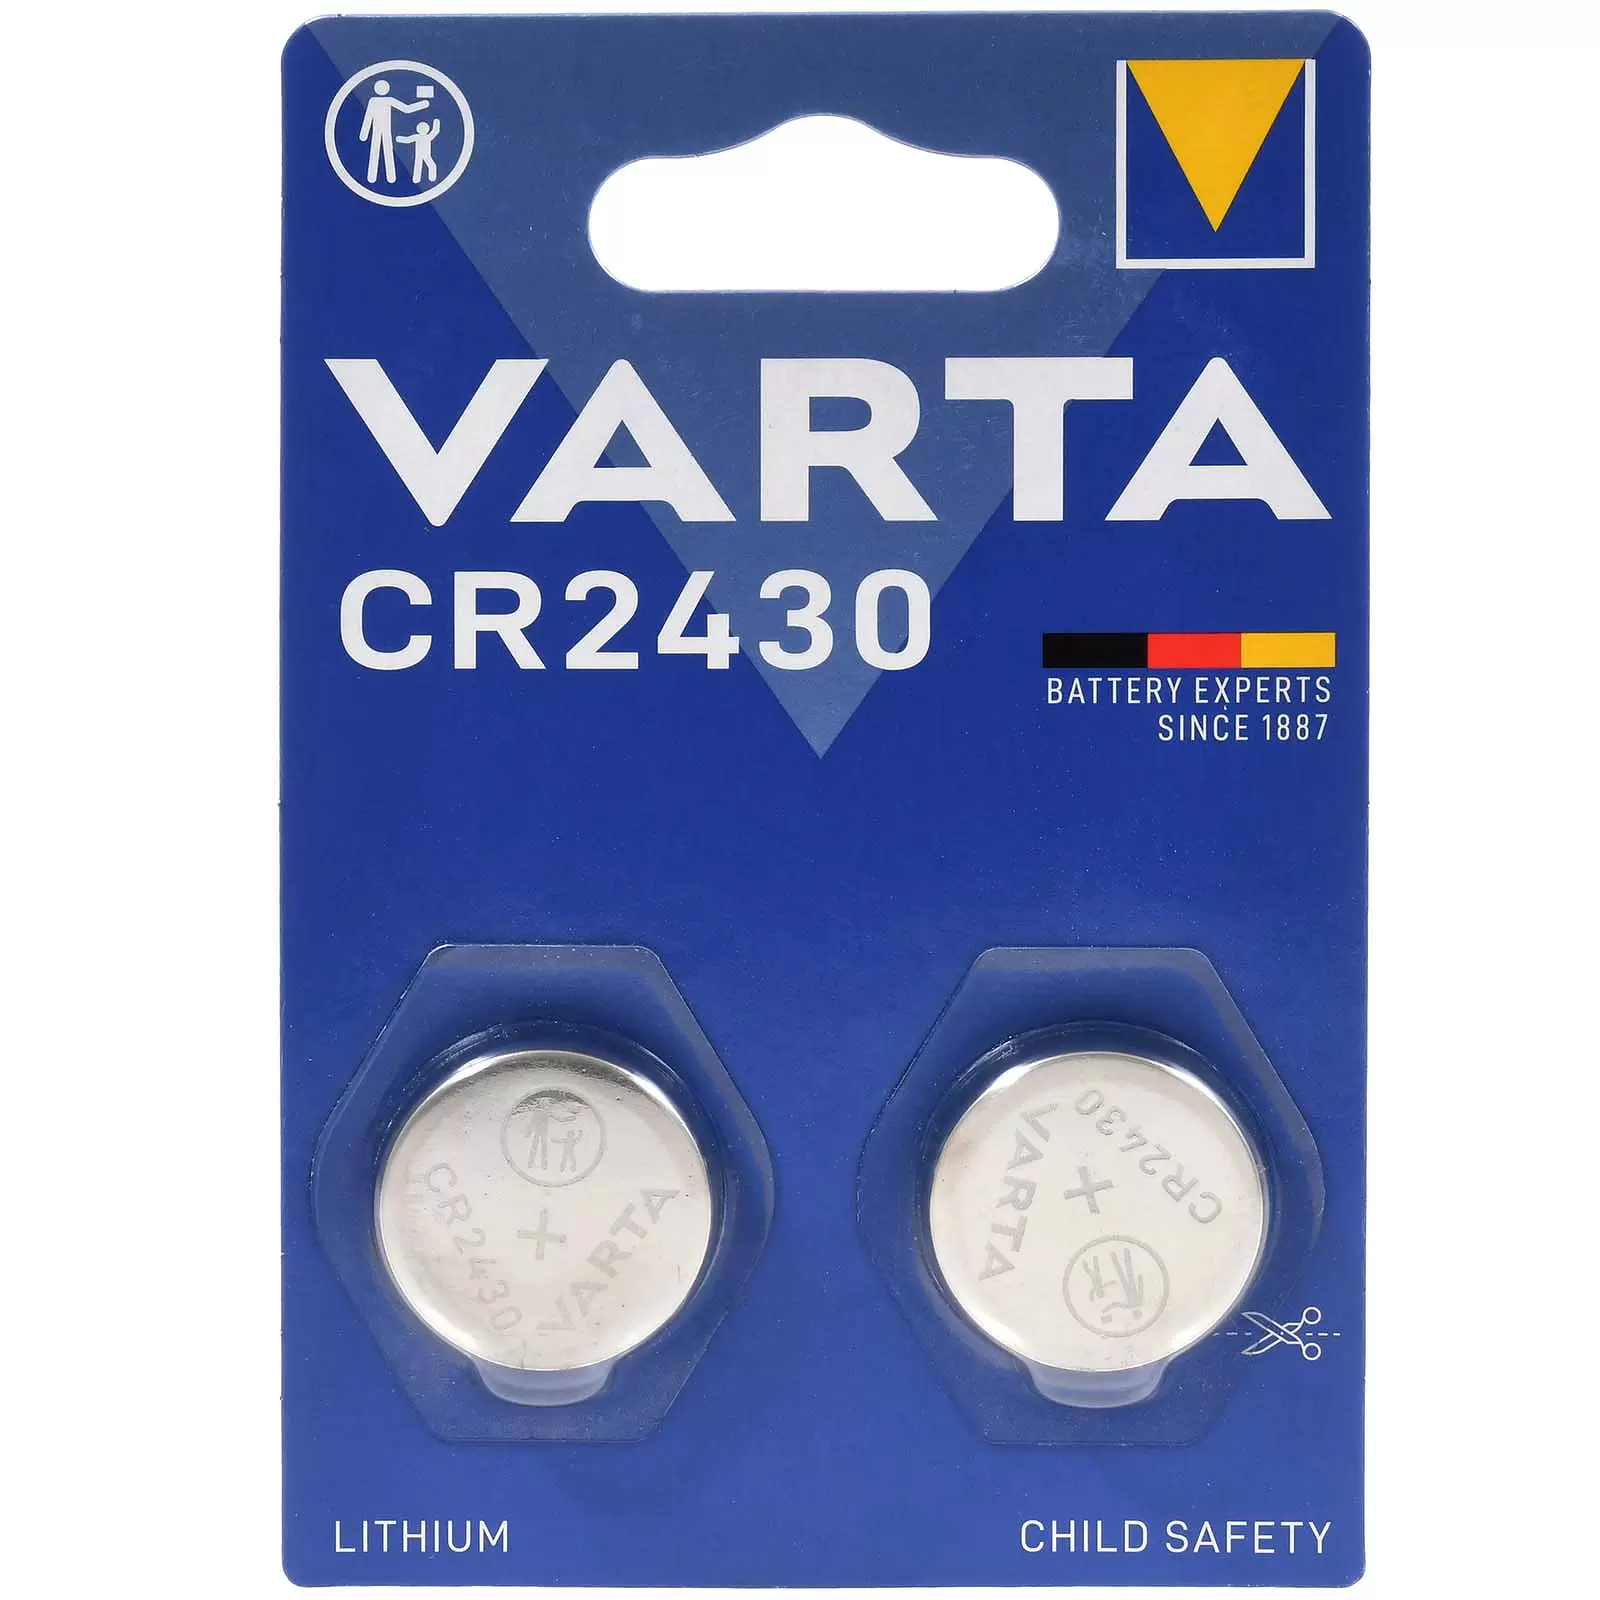 Varta Lithium Knopfzelle Batterie CR2430 3V 2er Blister